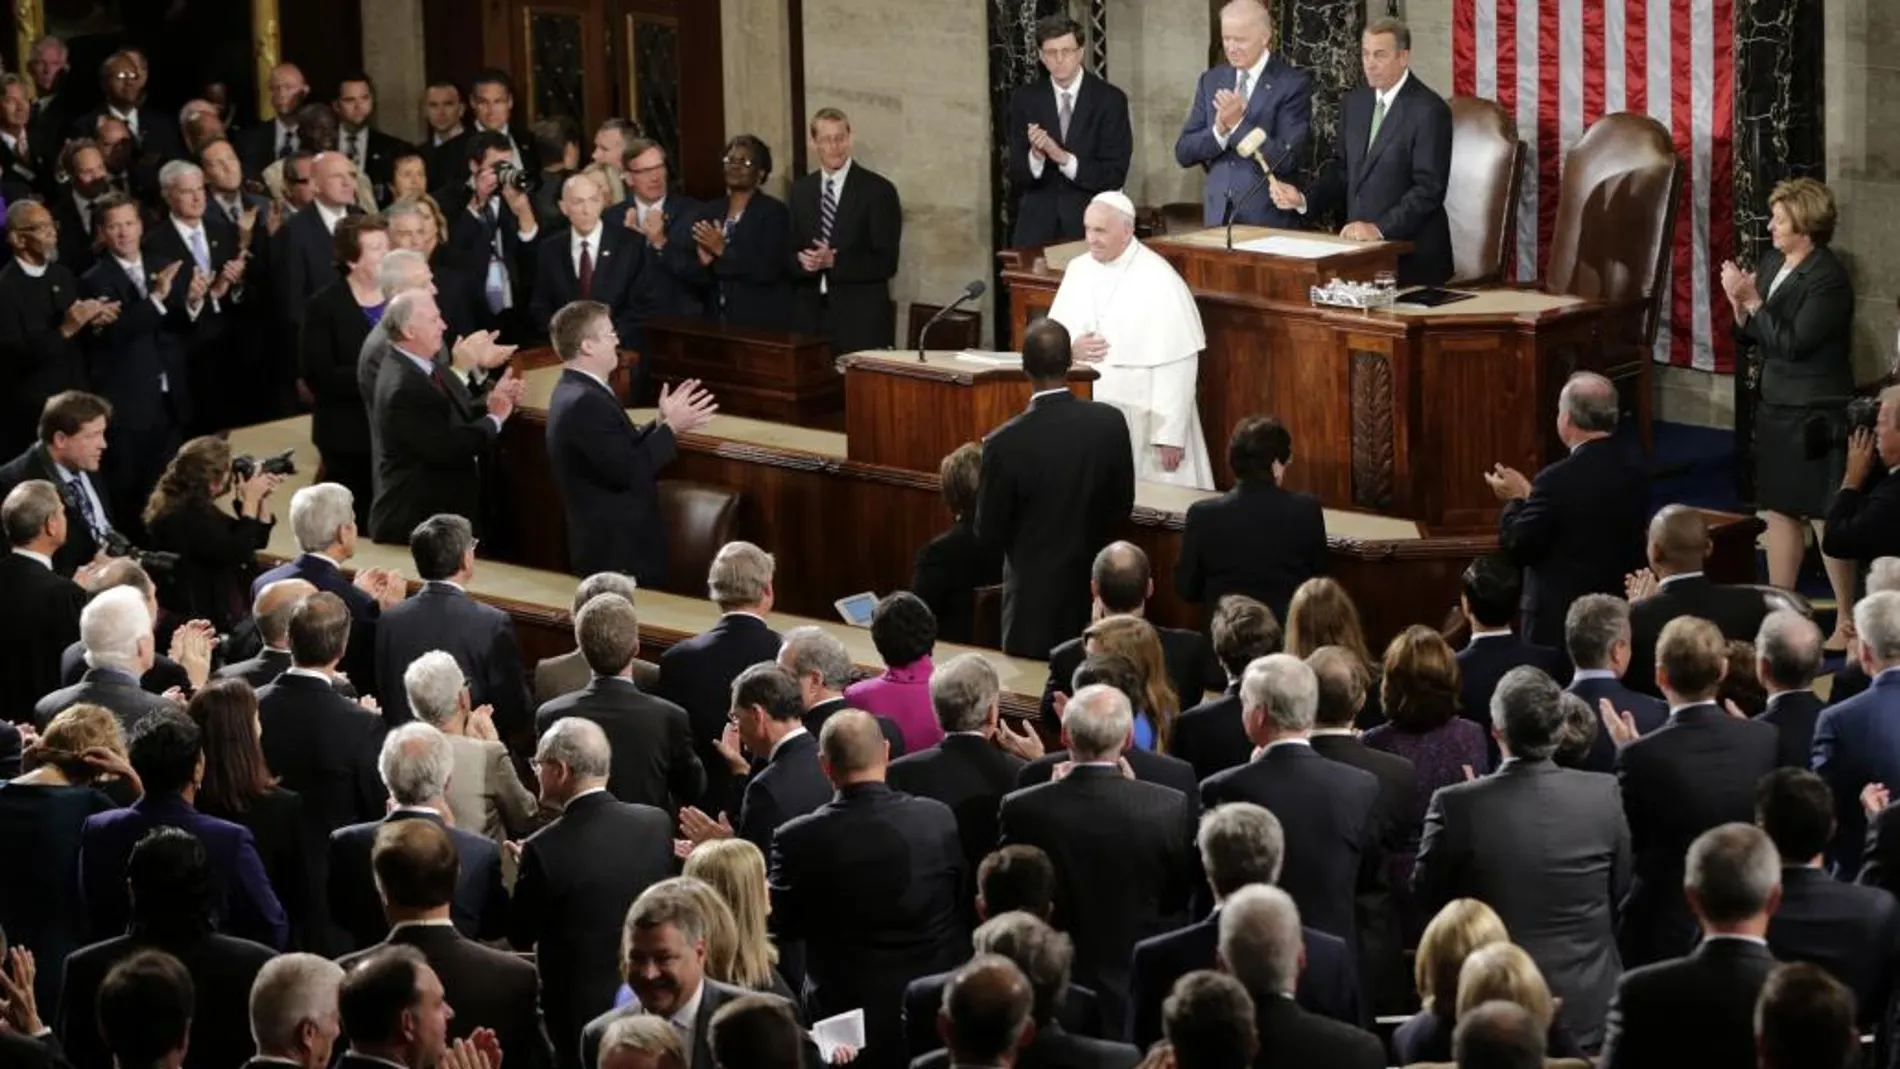 El Papa durante su discurso en el Congreso de Estados Unidos